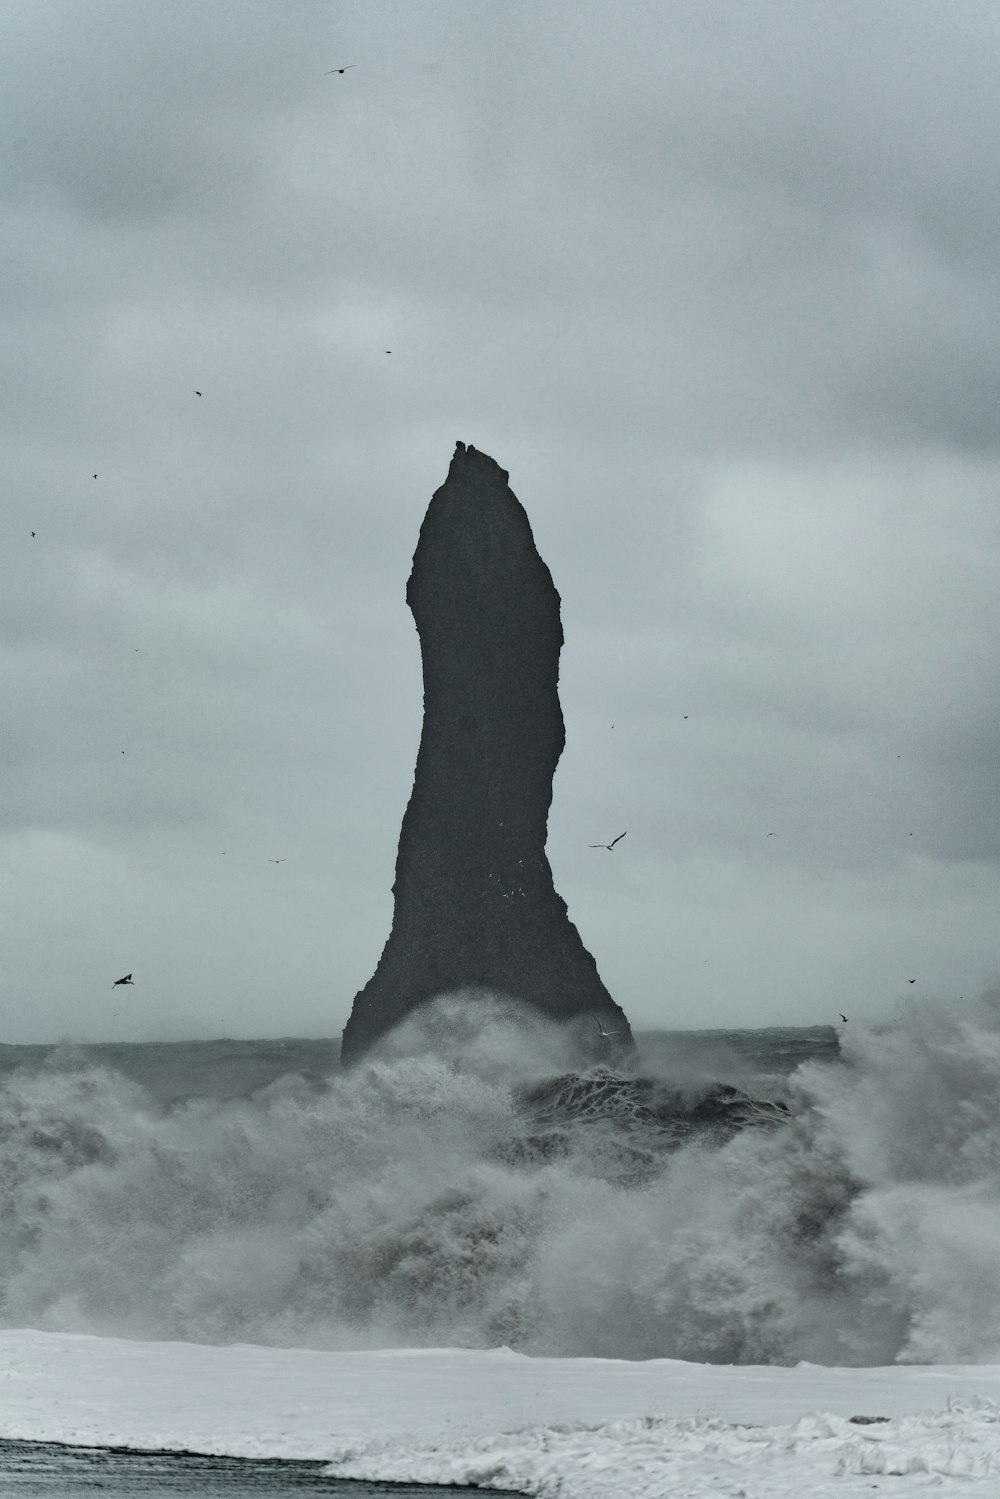 Una gran roca que sobresale del océano